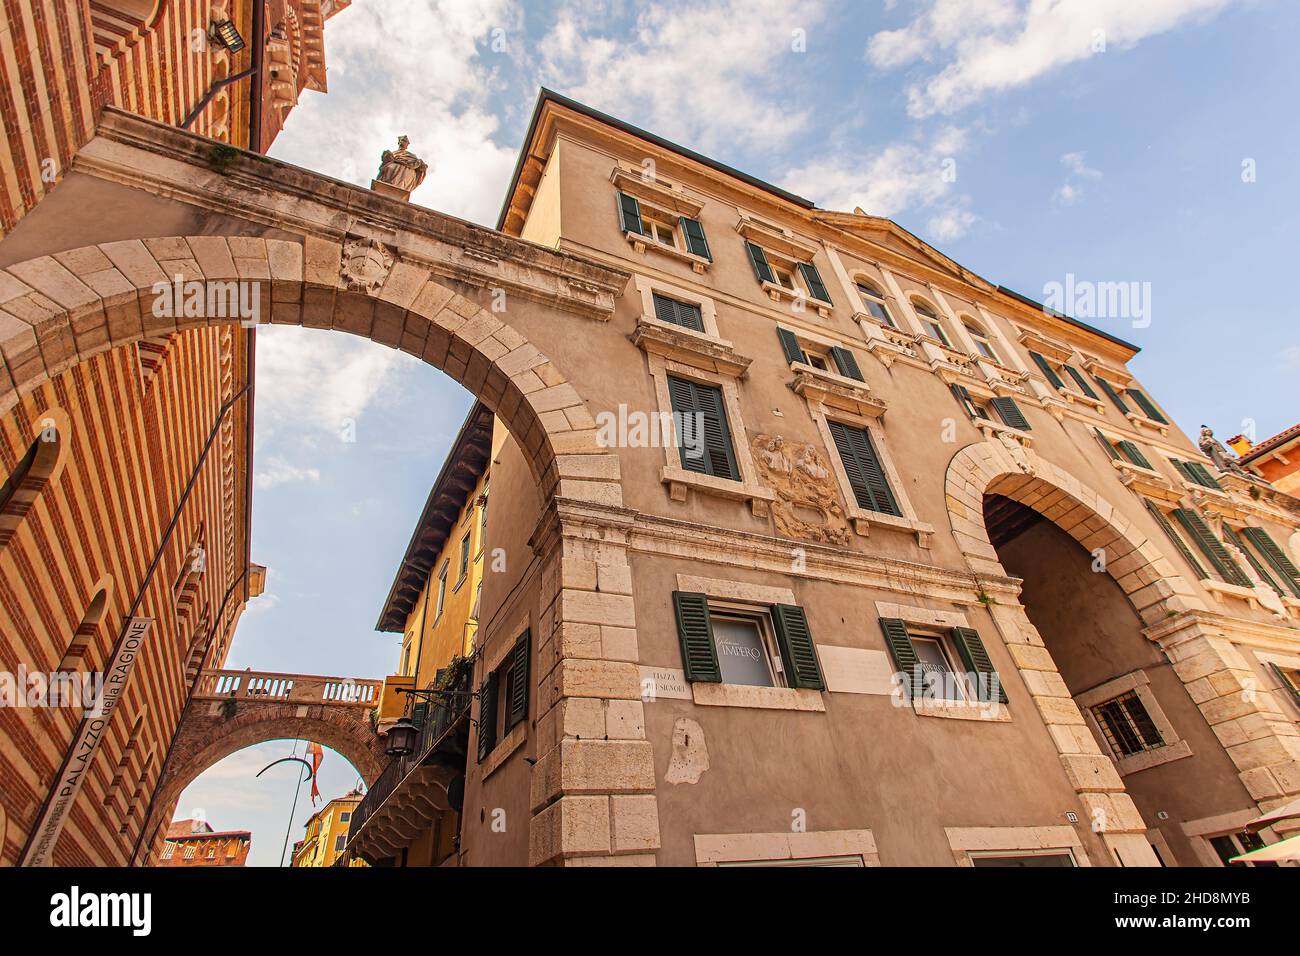 Piazza dei Signori, Signori square in Verona in Italy Stock Photo